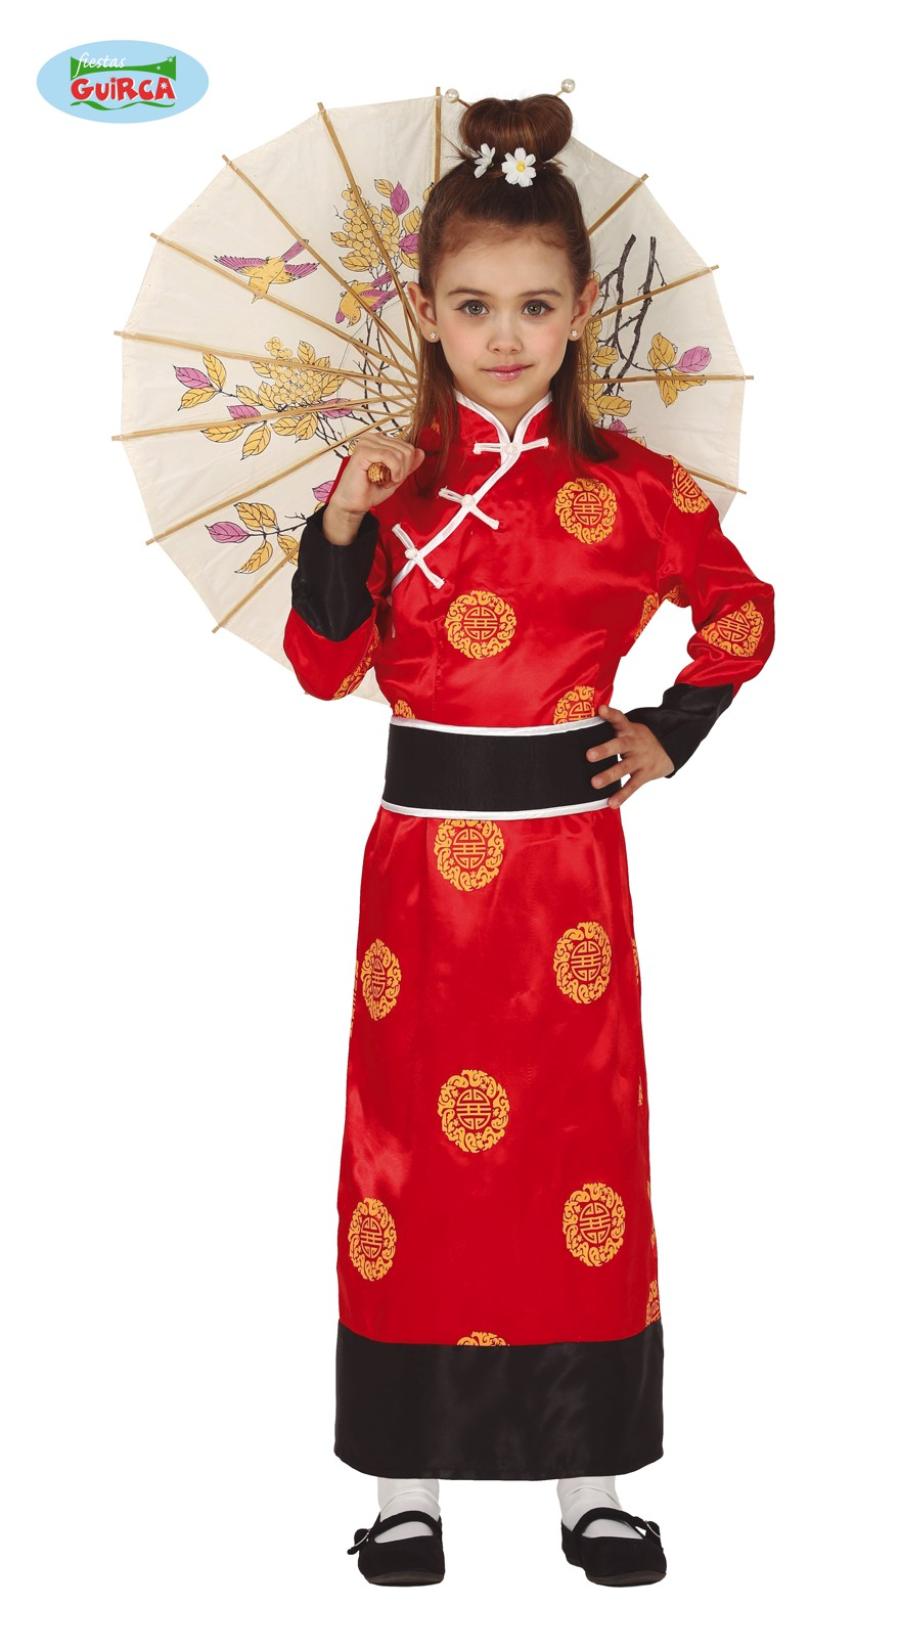 Costume come Kimono Giapponese per Bambina per Feste in Maschera -   - Addobbi ed articoli per feste, eventi e party